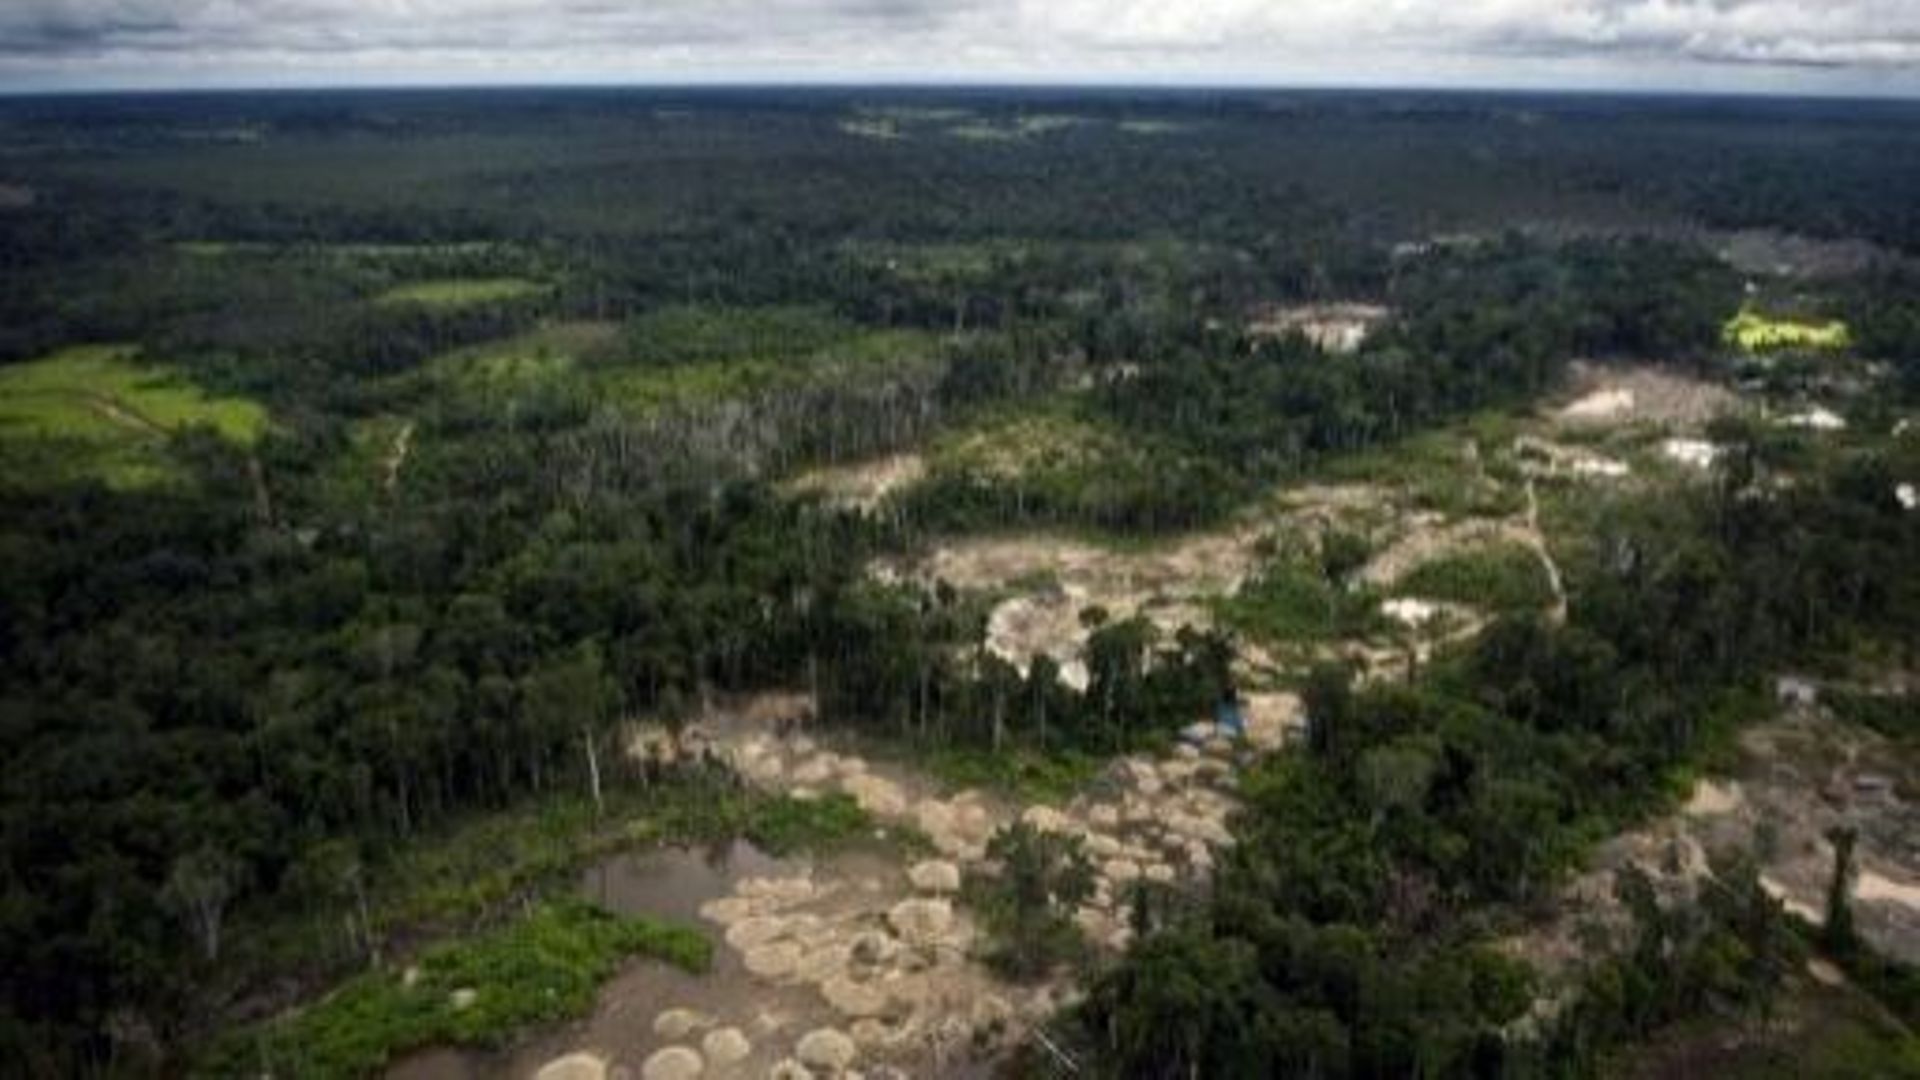 Vue aérienne d'une partie de la forêt amazonienne au Pérou ravagée par les mines d'or artisanales, le 19 février 2011